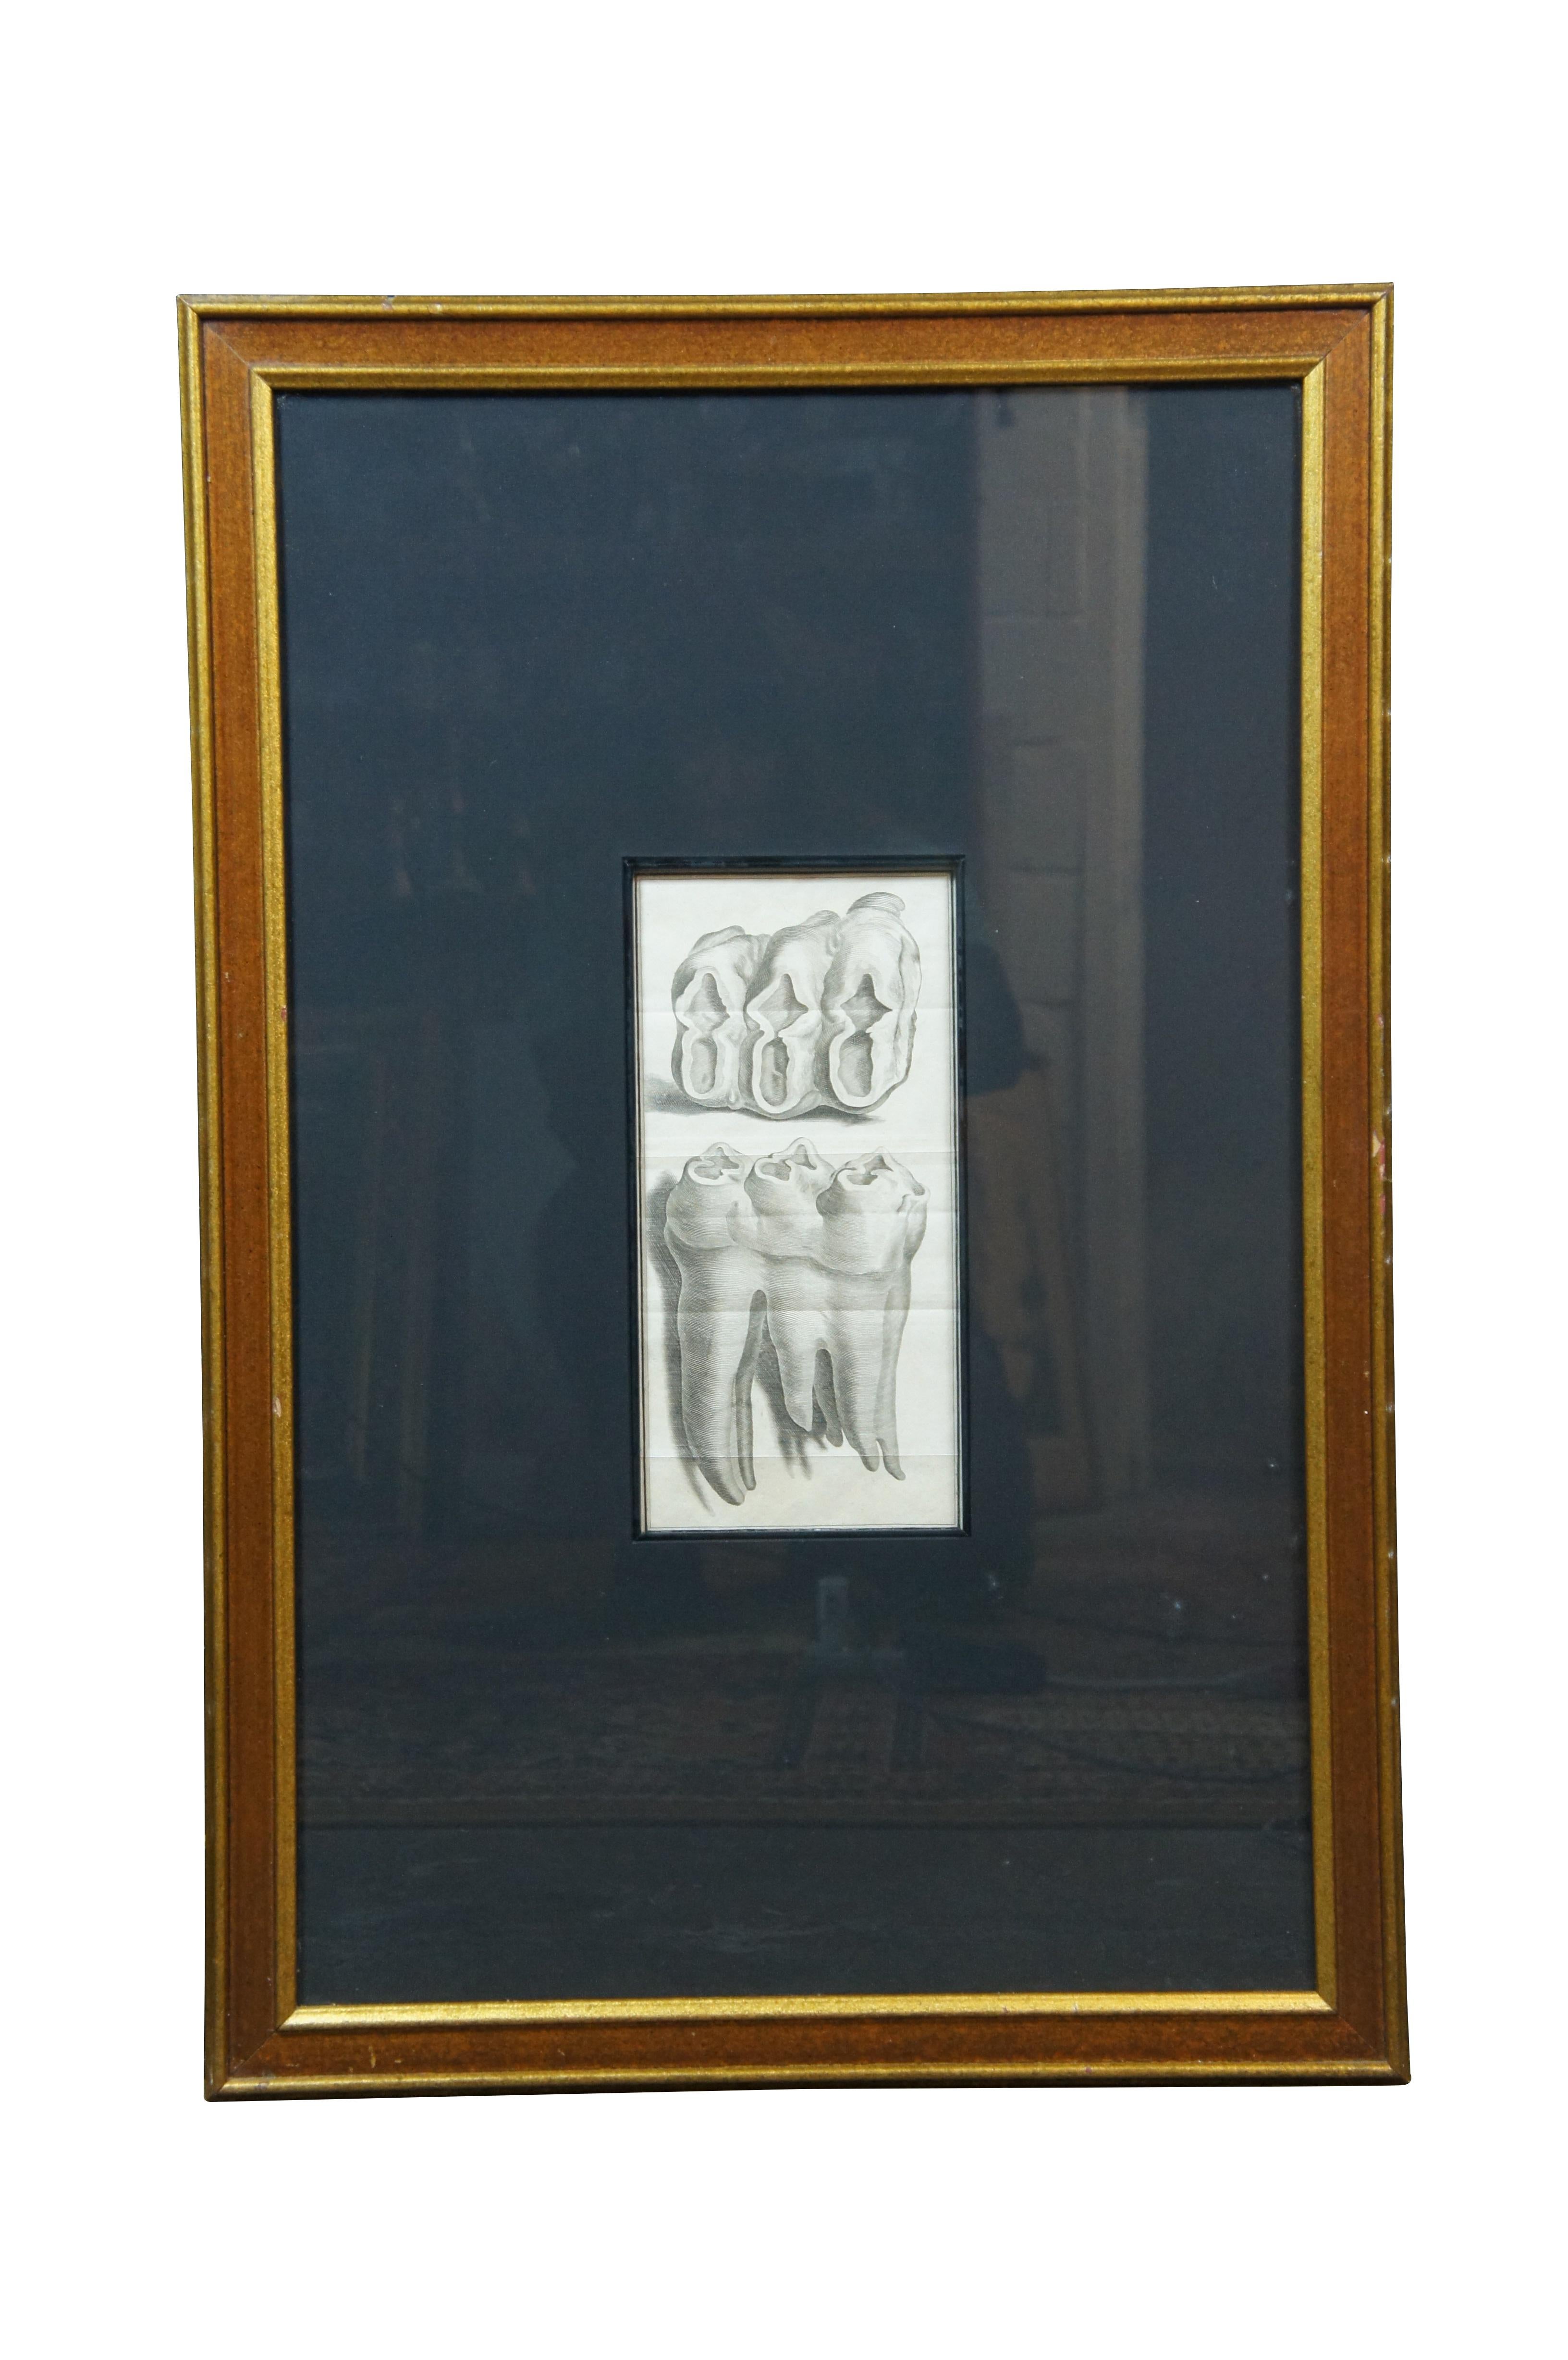 Paire de rares gravures anciennes du XVIIIe siècle de Jacques de Sève sur la dentition / Zoologie / anatomie /  Gravures d'une dent de Mastodonte / Mammouth, vues de face et de dessus / élévations. L'une d'entre elles est marquée comme étant la